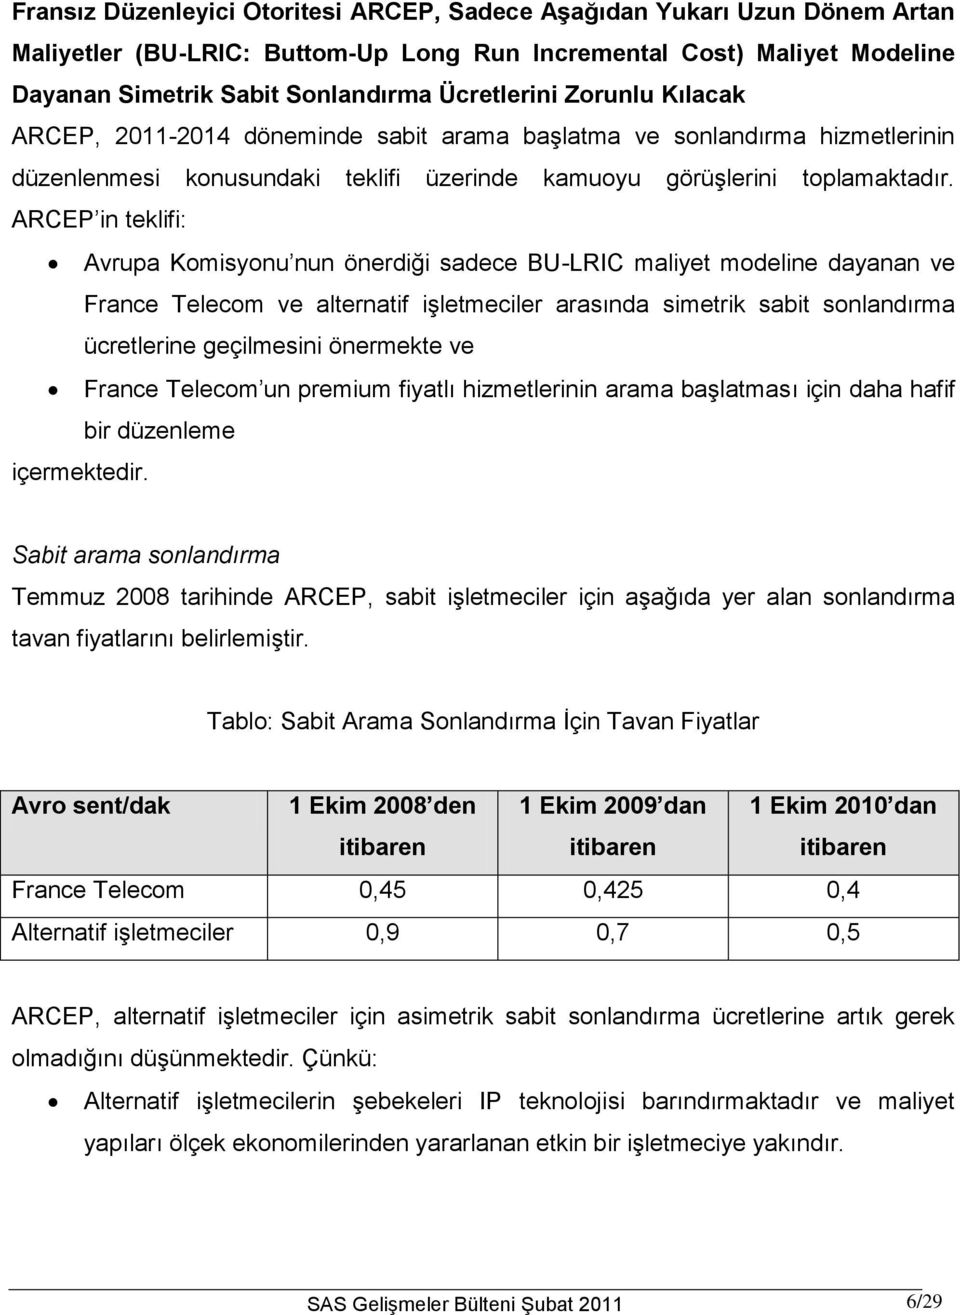 ARCEP in teklifi: Avrupa Komisyonu nun önerdiği sadece BU-LRIC maliyet modeline dayanan ve France Telecom ve alternatif işletmeciler arasında simetrik sabit sonlandırma ücretlerine geçilmesini